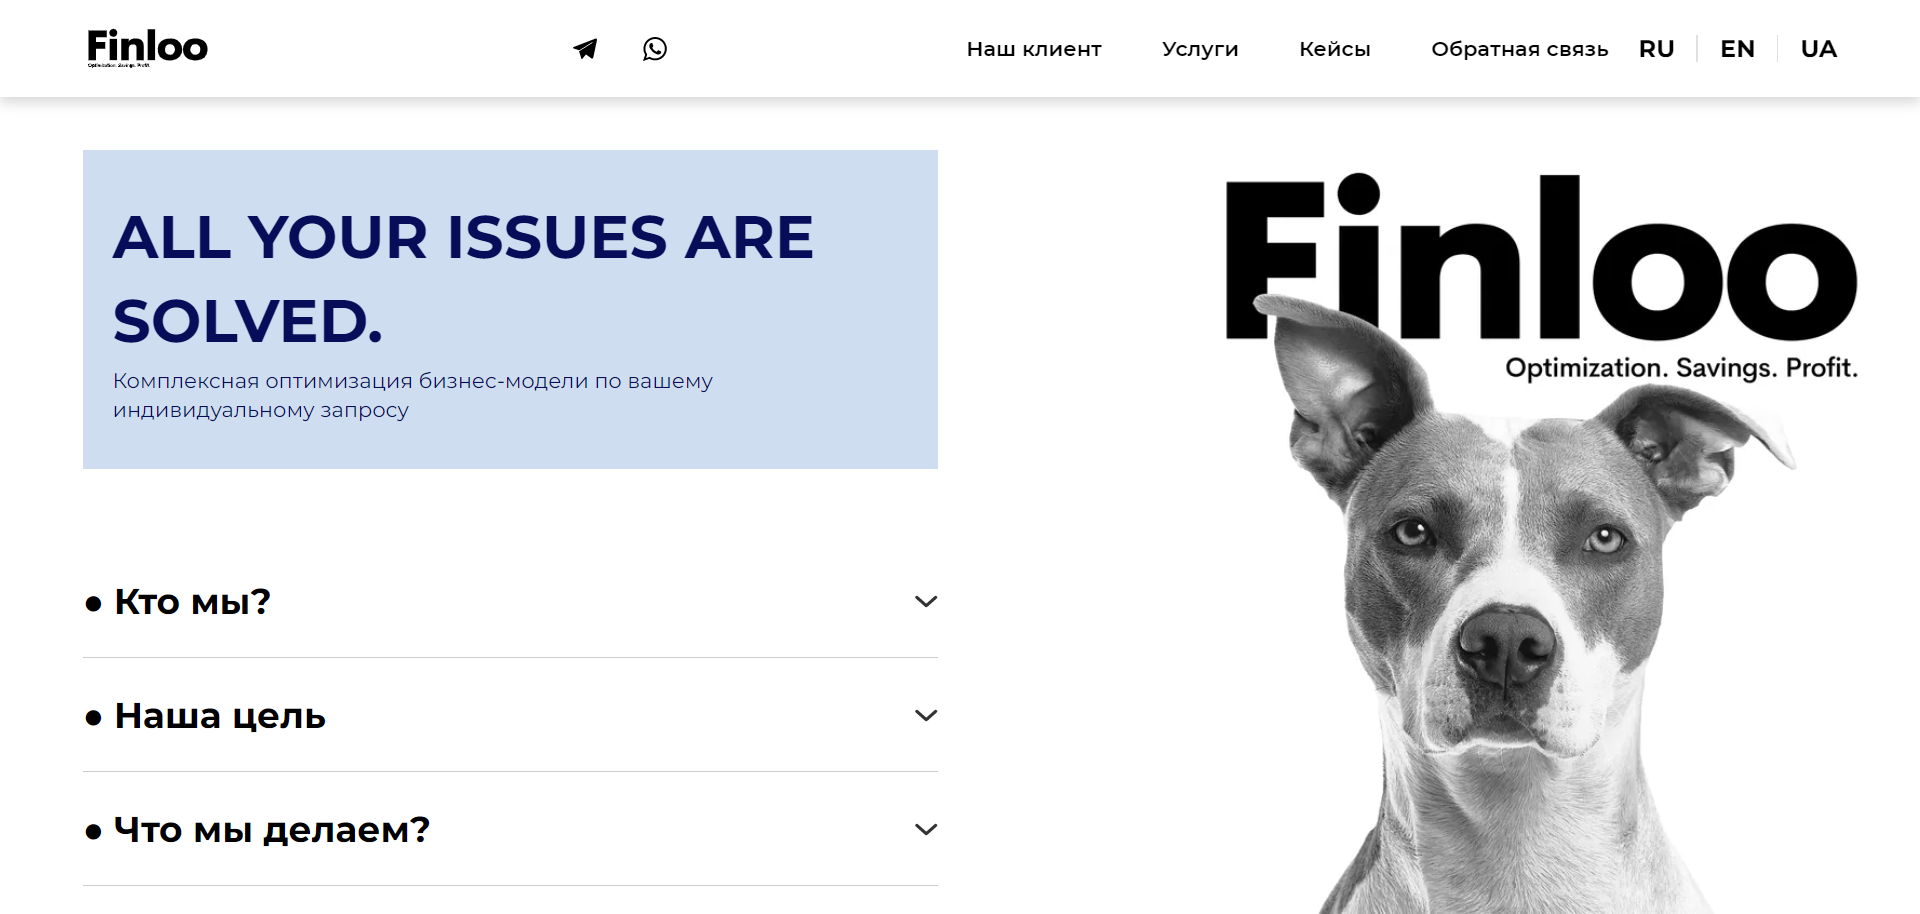 Finloo – отзывы, обзор консалтингового агентства